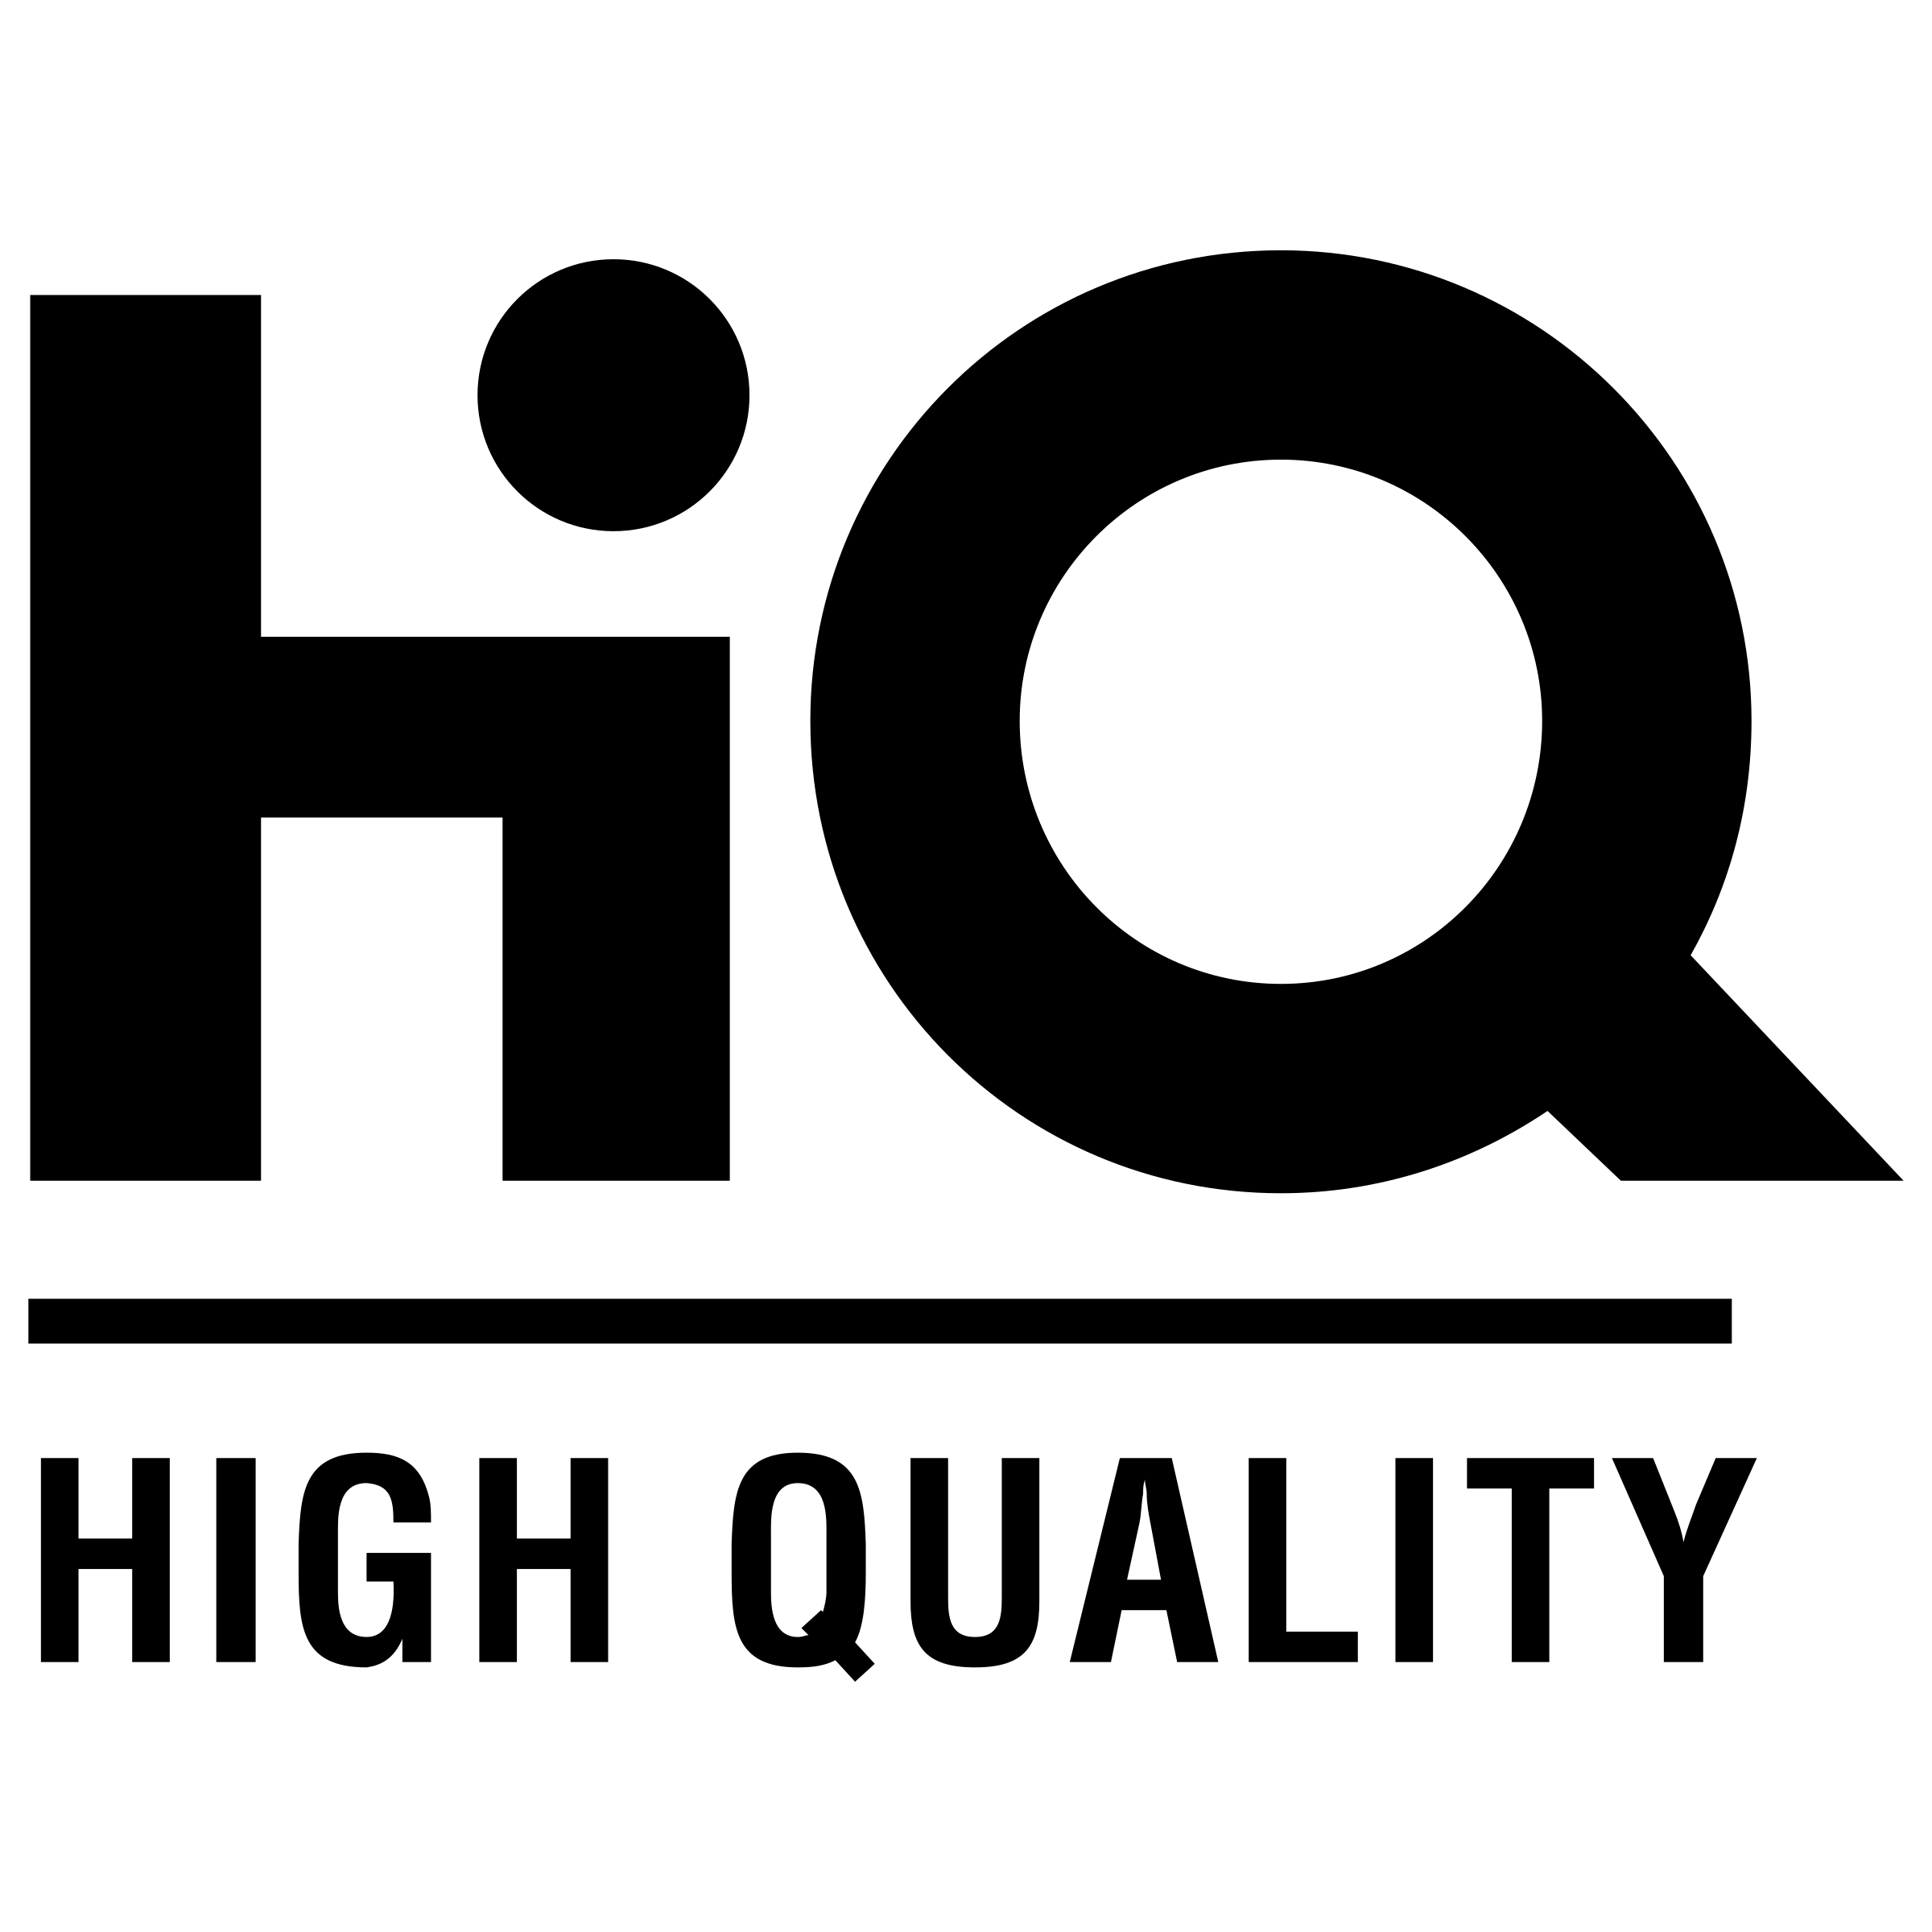 High Quality Logo - High Quality Logo PNG Transparent & SVG Vector